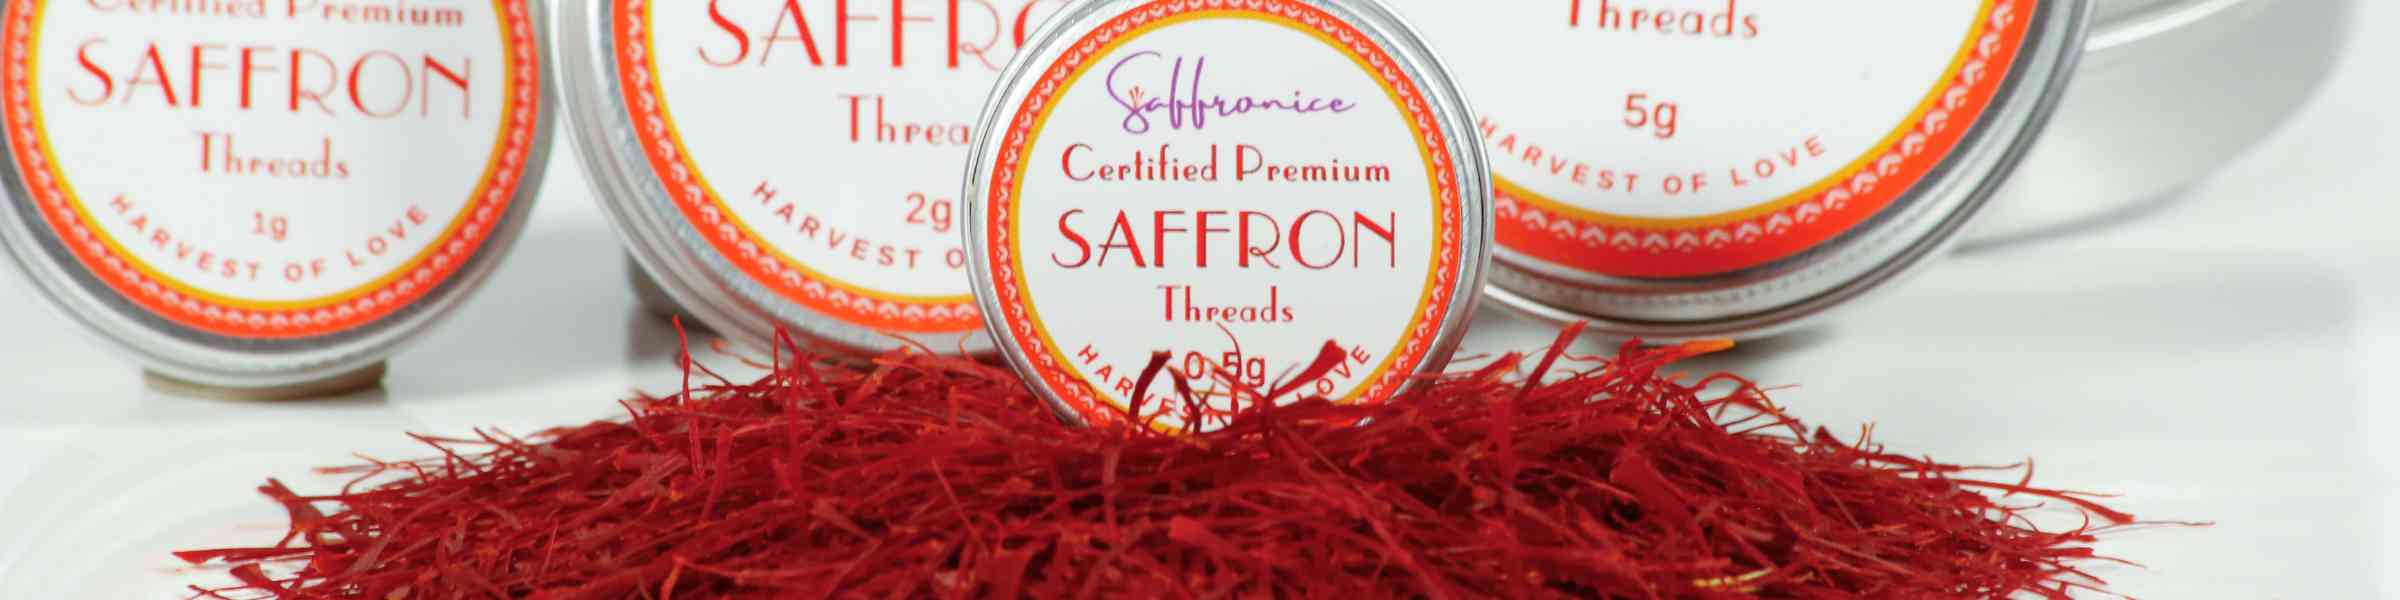 Best Saffron storage